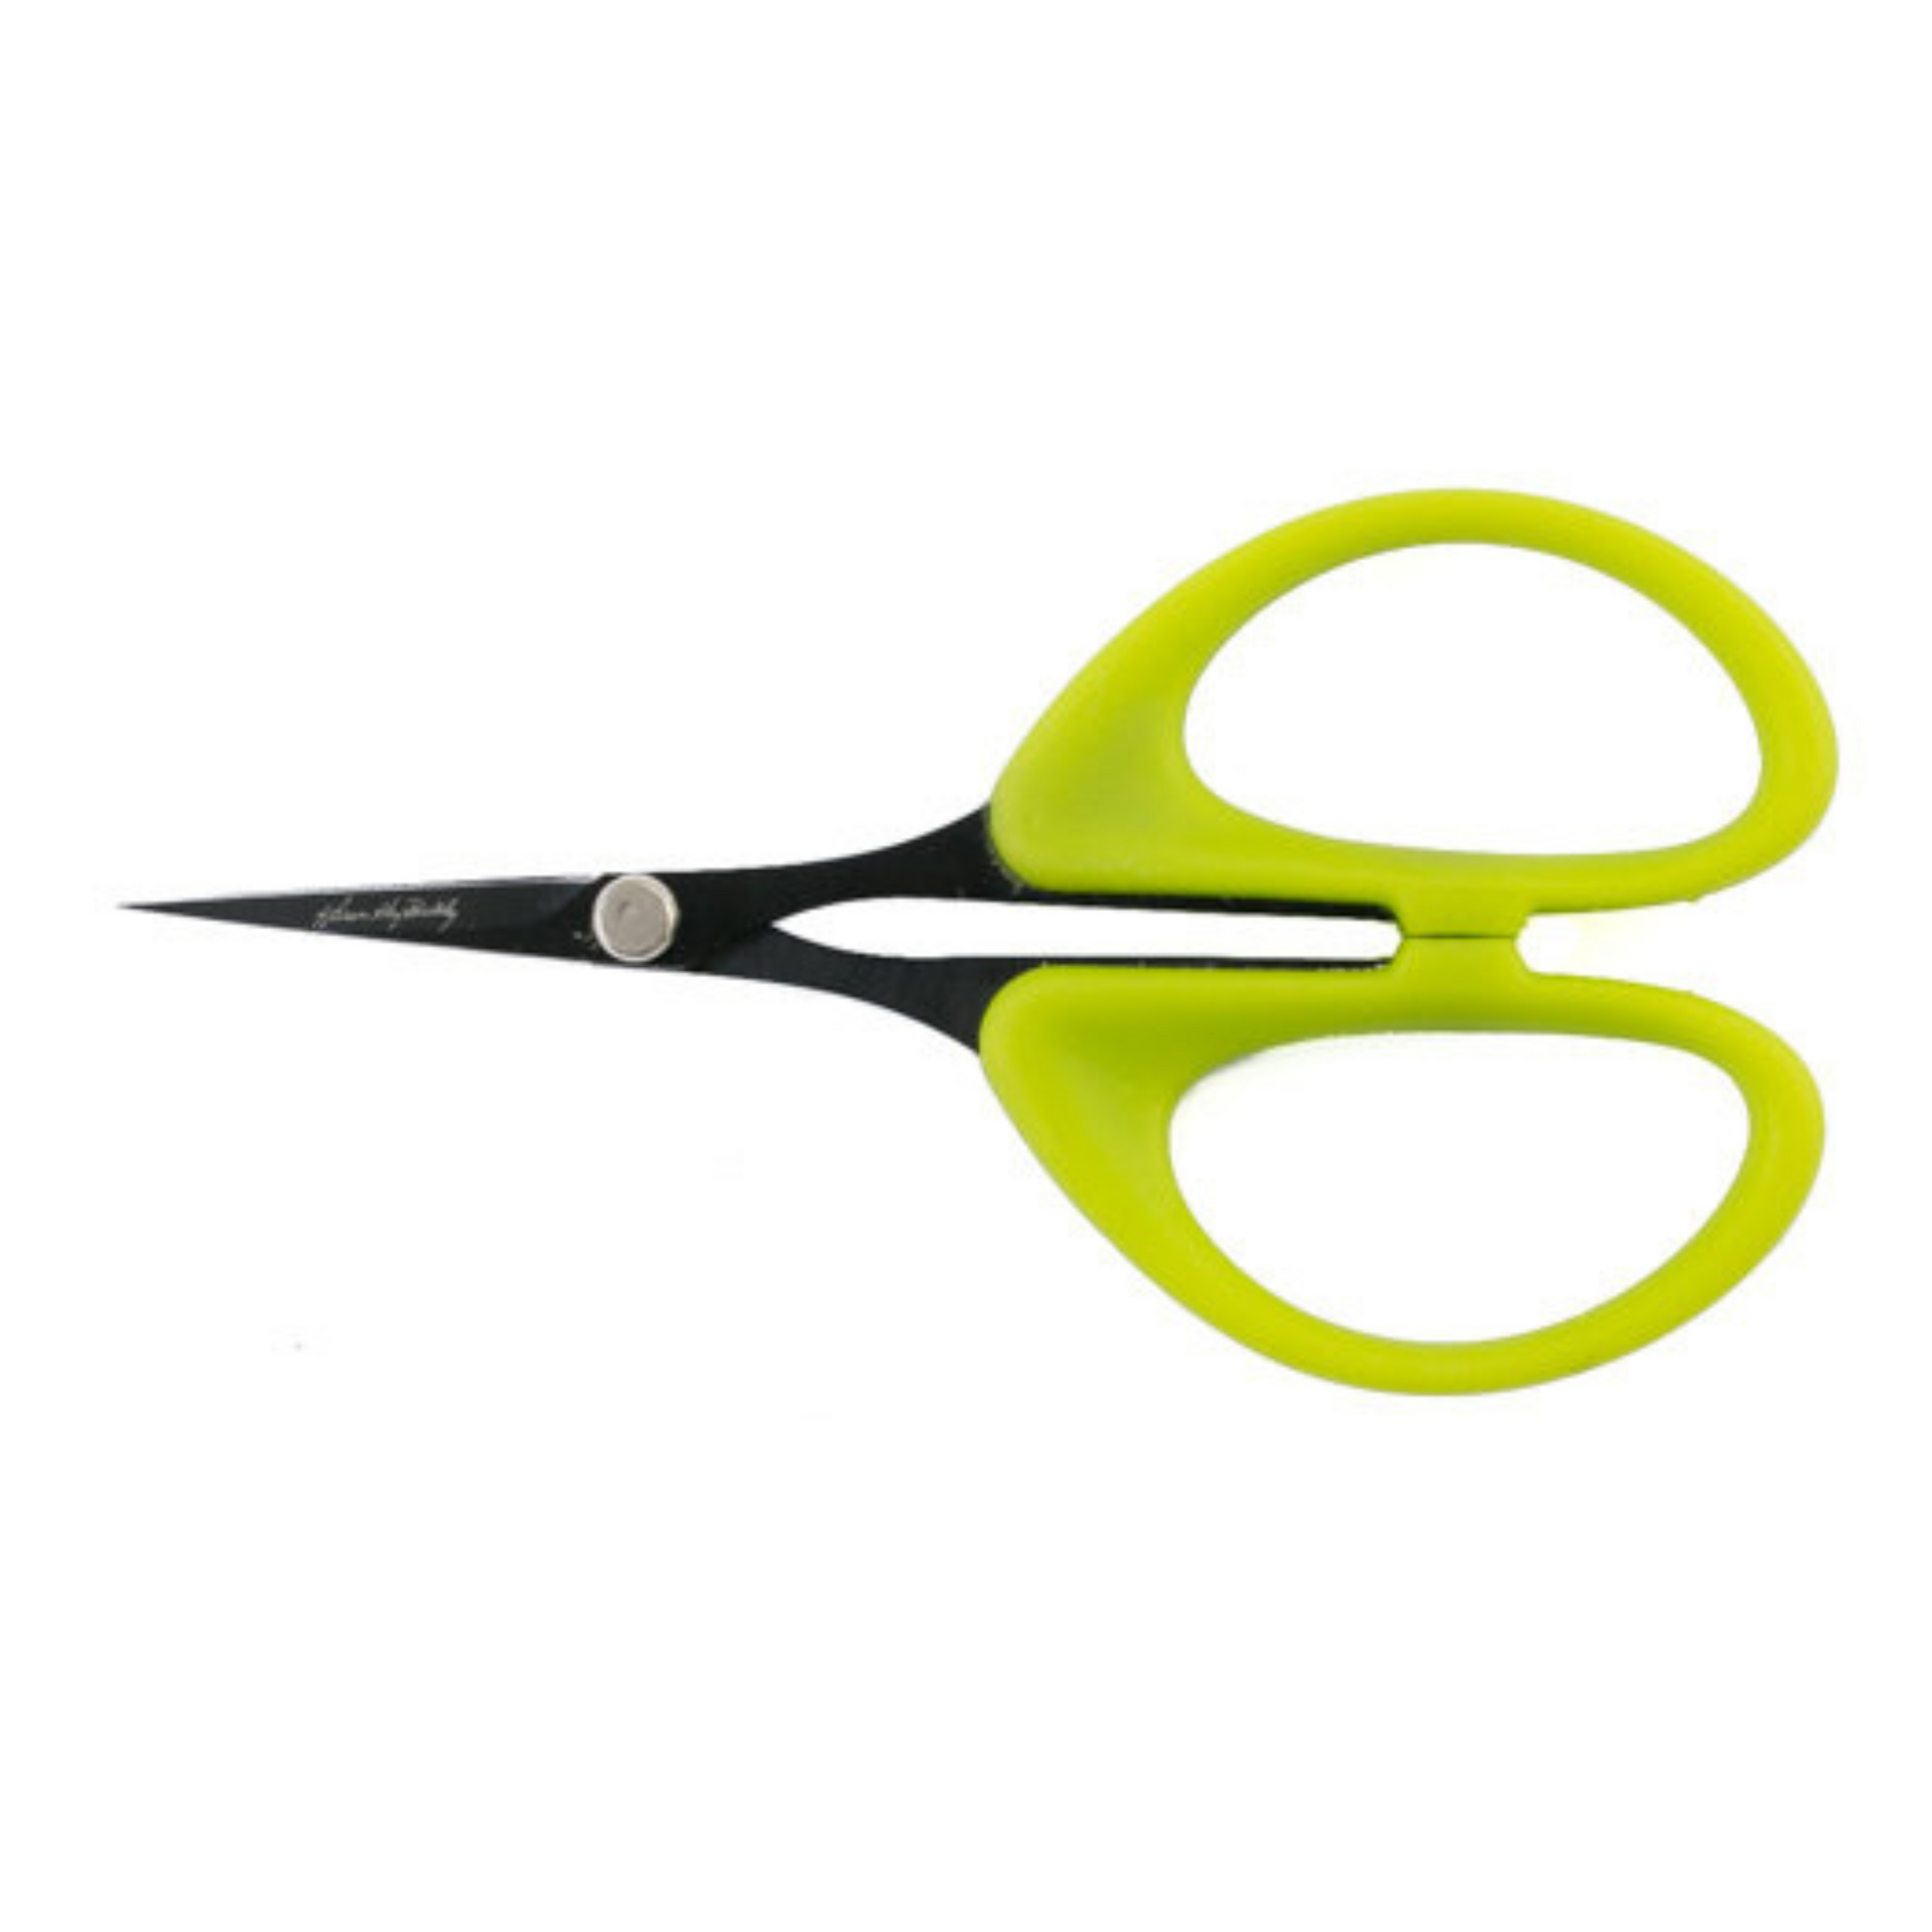 Scissors - Karen K. Buckley Perfect Scissors - Small 4 - Green